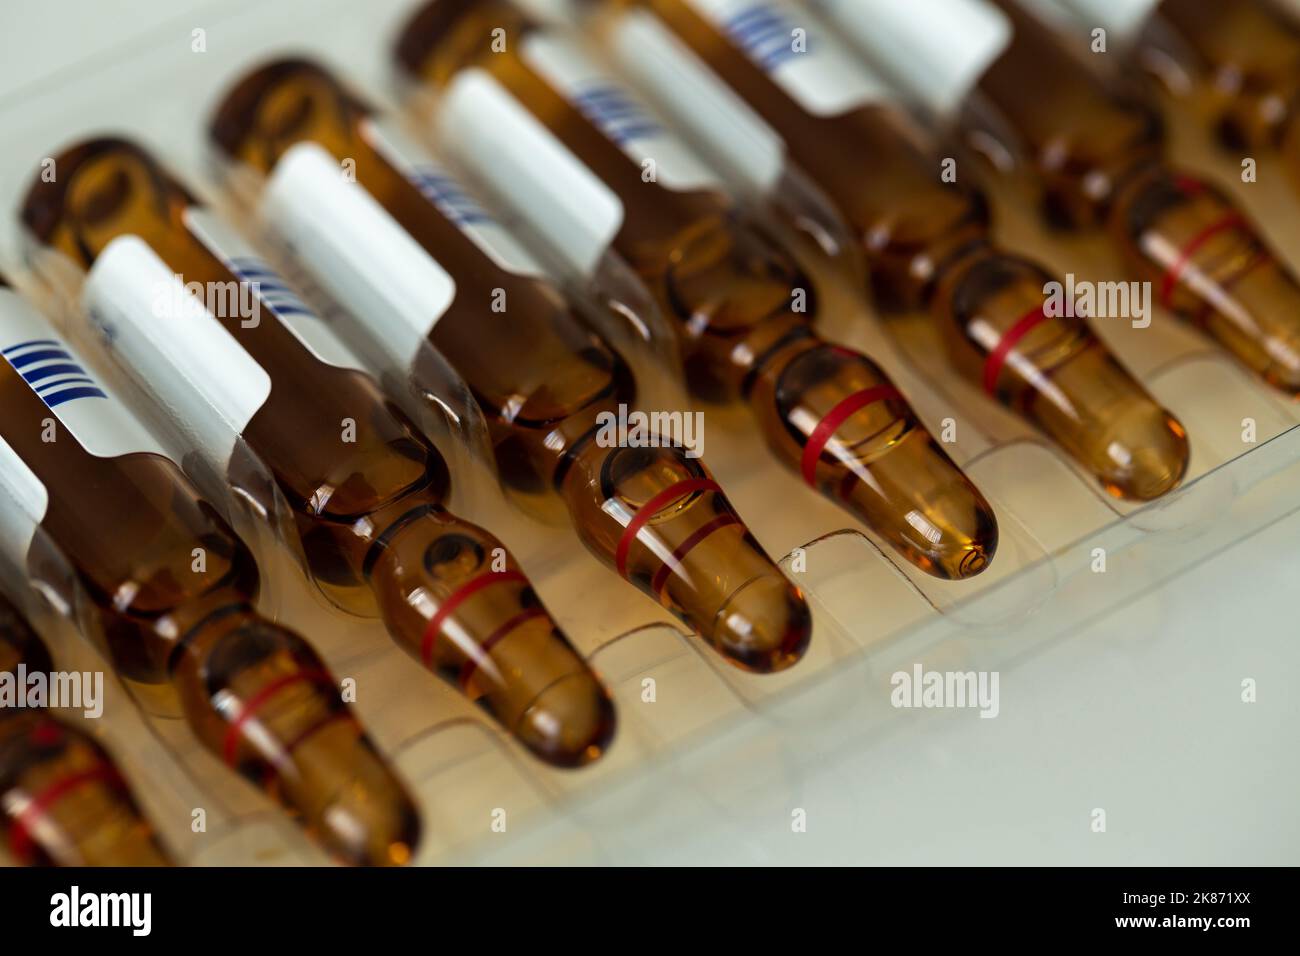 Liquid medicine vials. Stock Photo